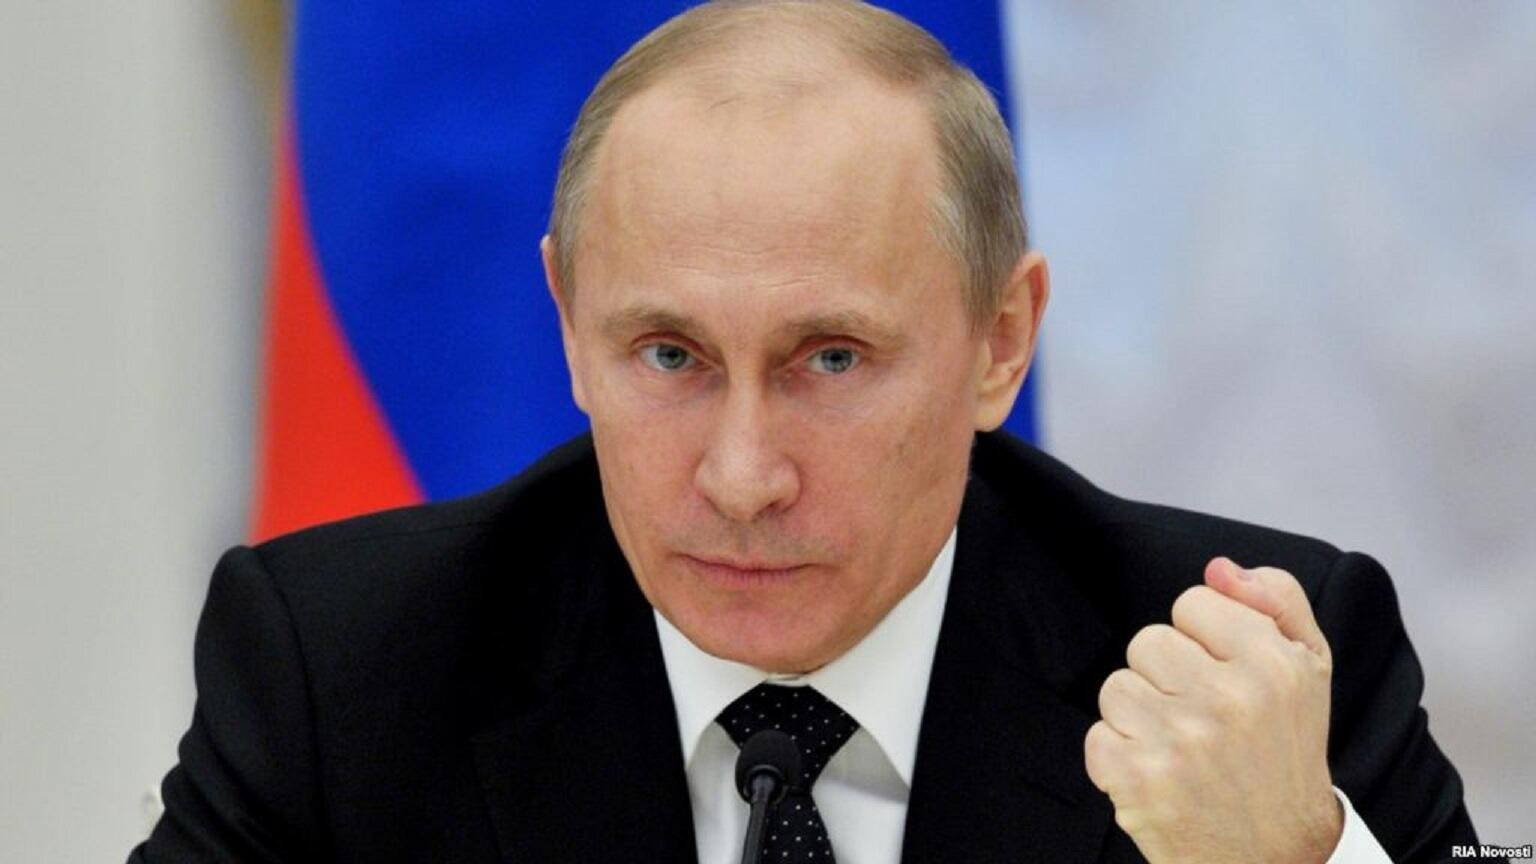 Putin sərt tədbirlərə əl atacaq – ABŞ kəşfiyyatı